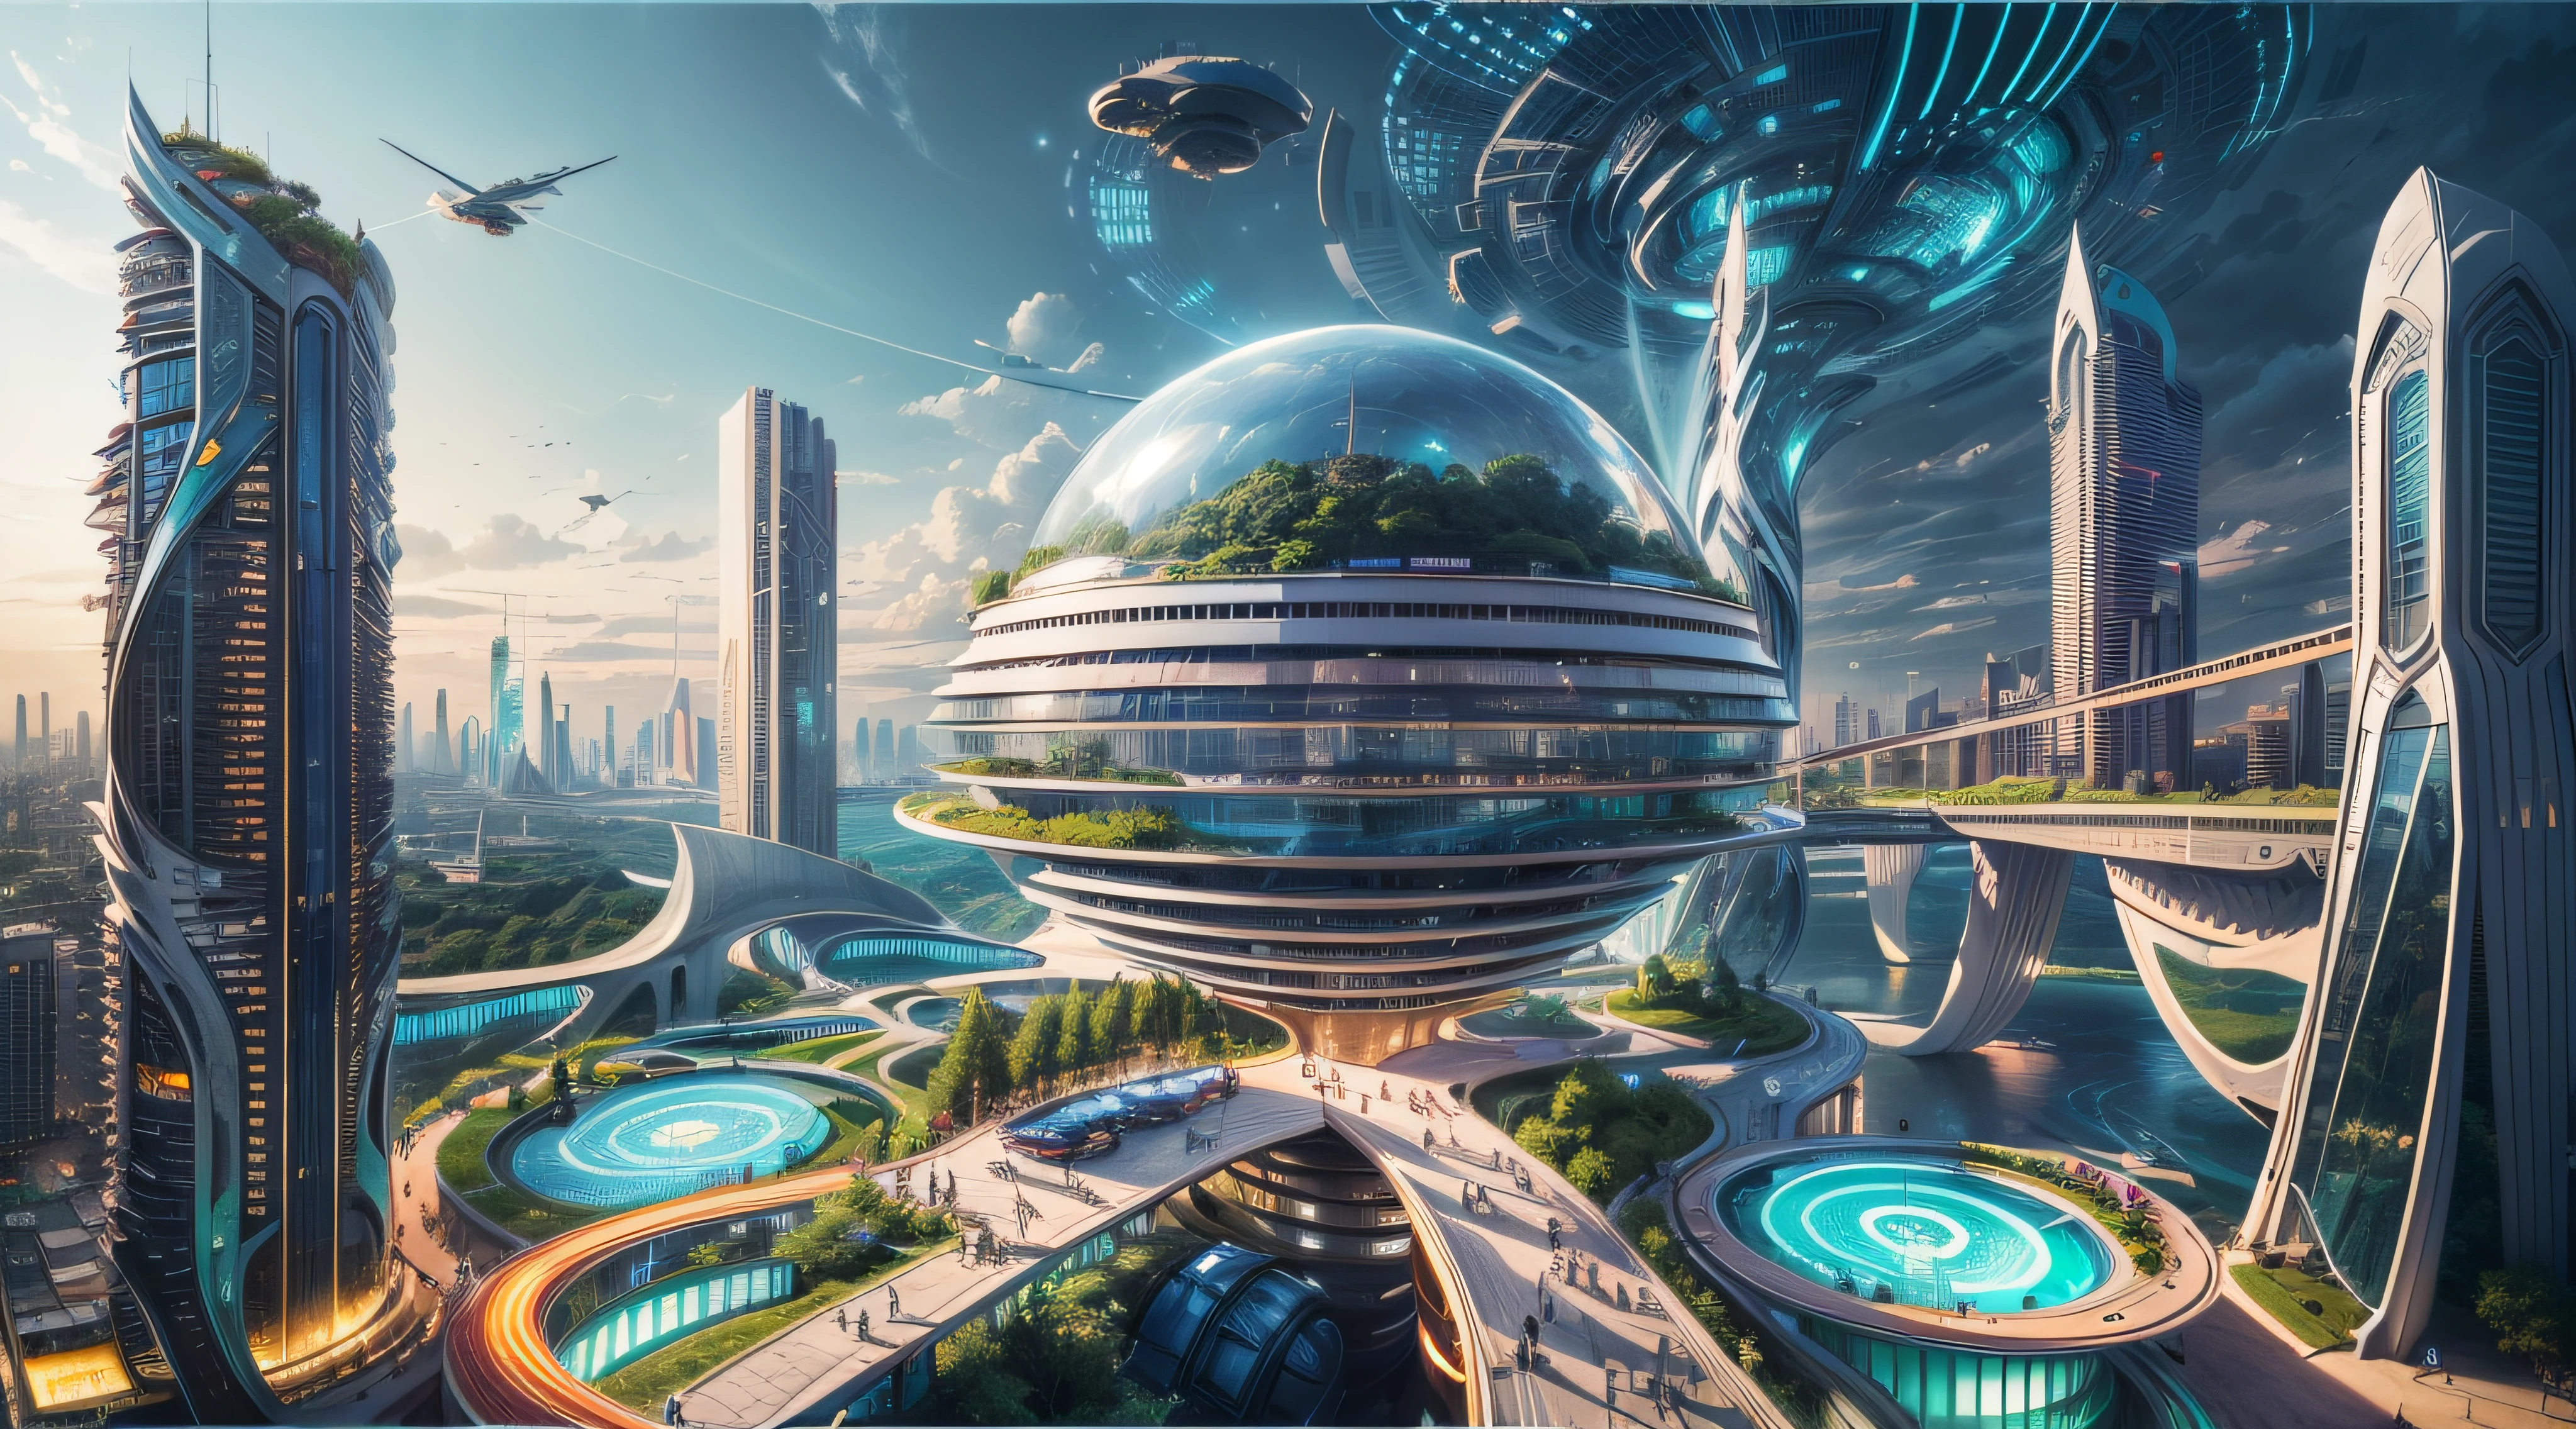 (最高品質,4K,8k,高解像度,傑作:1.2),超詳細,(現実的,写実的な,写真のようにリアル:1.37),未来的な水上都市,未来の技術,巨大な都市型ハイテクタブレットプラットフォーム,飛行船,空に浮かぶ,未来都市,小さな飛行船が周囲に,ハイテク半球形プラットフォーム,カラフルなライト,高度なアーキテクチャ,モダン建築,超高層ビル,クラウドにアクセスする,美しい景色,街の眺め,印象的なデザイン,自然とシームレスに融合,活気に満ちた活気のある雰囲気,未来の交通システム,吊り下げ式駐車場,透明なパス,豊かな緑,スカイガーデン,滝,壮大なスカイライン,水面に映る,輝く川,建築の革新,未来的な高層ビル,透明ドーム,建物の形状が珍しい,高架歩道,印象的なスカイライン,光るライト,未来の技術,ミニマリストデザイン,景勝地,全景,雲を貫く塔,鮮やかな色彩,壮大な日の出,壮大な夕日,まばゆい光のディスプレイ,魔法のような雰囲気,未来都市,都会のユートピア,ラグジュアリーライフスタイル,革新的なエネルギー,持続可能な発展,スマートシティテクノロジー,高度なインフラストラクチャ,静かな雰囲気,自然とテクノロジーは調和して共存する,素晴らしい街並み,前例のない都市計画,建築は自然とシームレスにつながる,ハイテク都市,最先端のエンジニアリングの驚異,都市生活の未来,先見性のある建築コンセプト,エネルギー効率の高い建物,環境との調和,雲の上に浮かぶ街,ユートピアの夢が現実になる,可能性は無限大,最先端の交通ネットワーク,グリーンエネルギーの統合,革新的な素材,印象的なホログラフィックディスプレイ,高度な通信システム,息を呑むような空中からの眺め,静かで平和な環境,モダニズムの美学,天上の美しさ